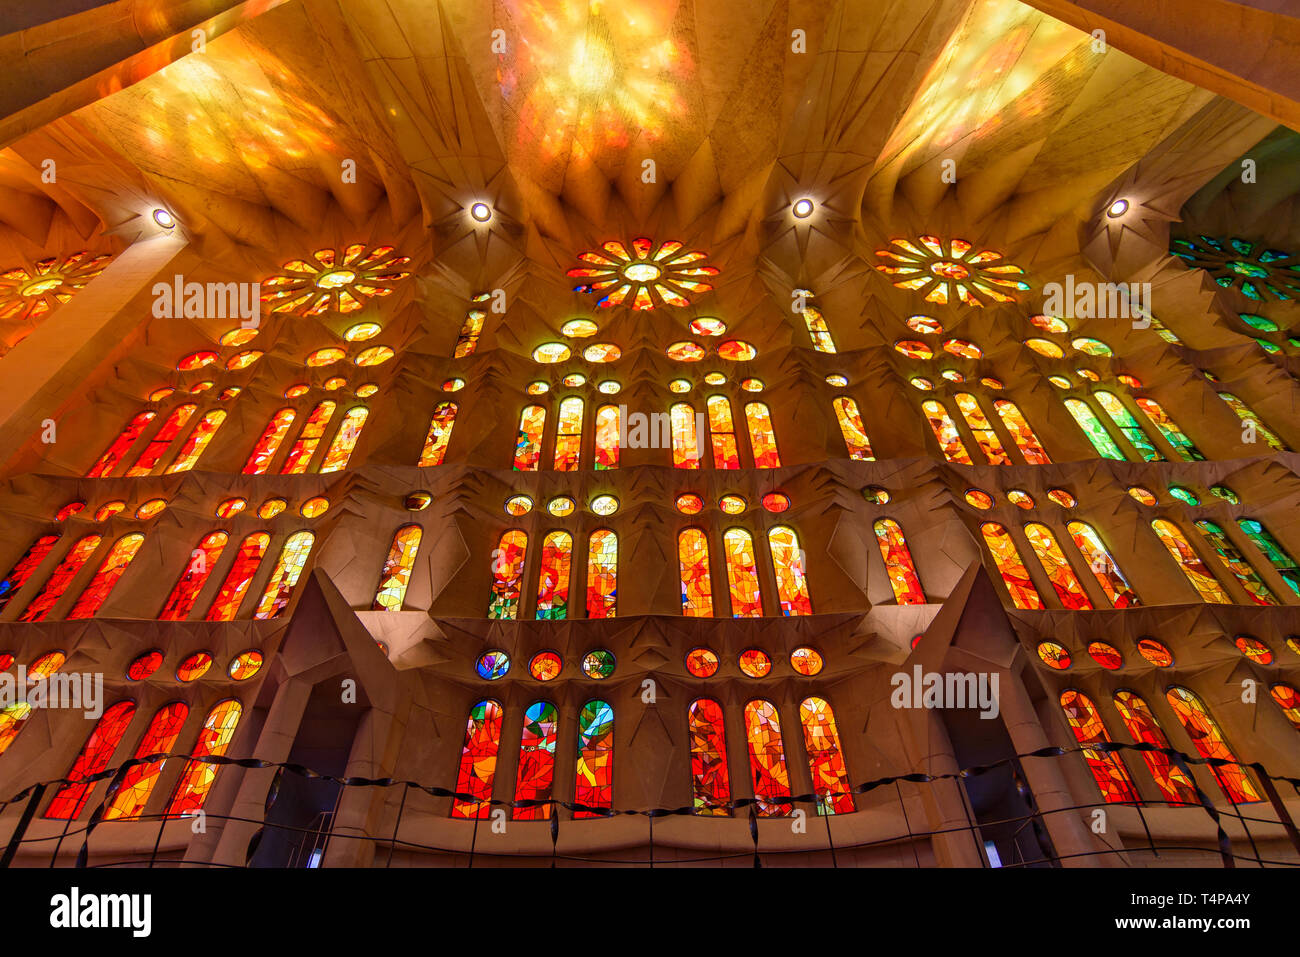 La lumière à travers les vitraux de la Sagrada Familia (église de la Sainte Famille), la cathédrale conçue par Gaudi à Barcelone, Espagne Banque D'Images